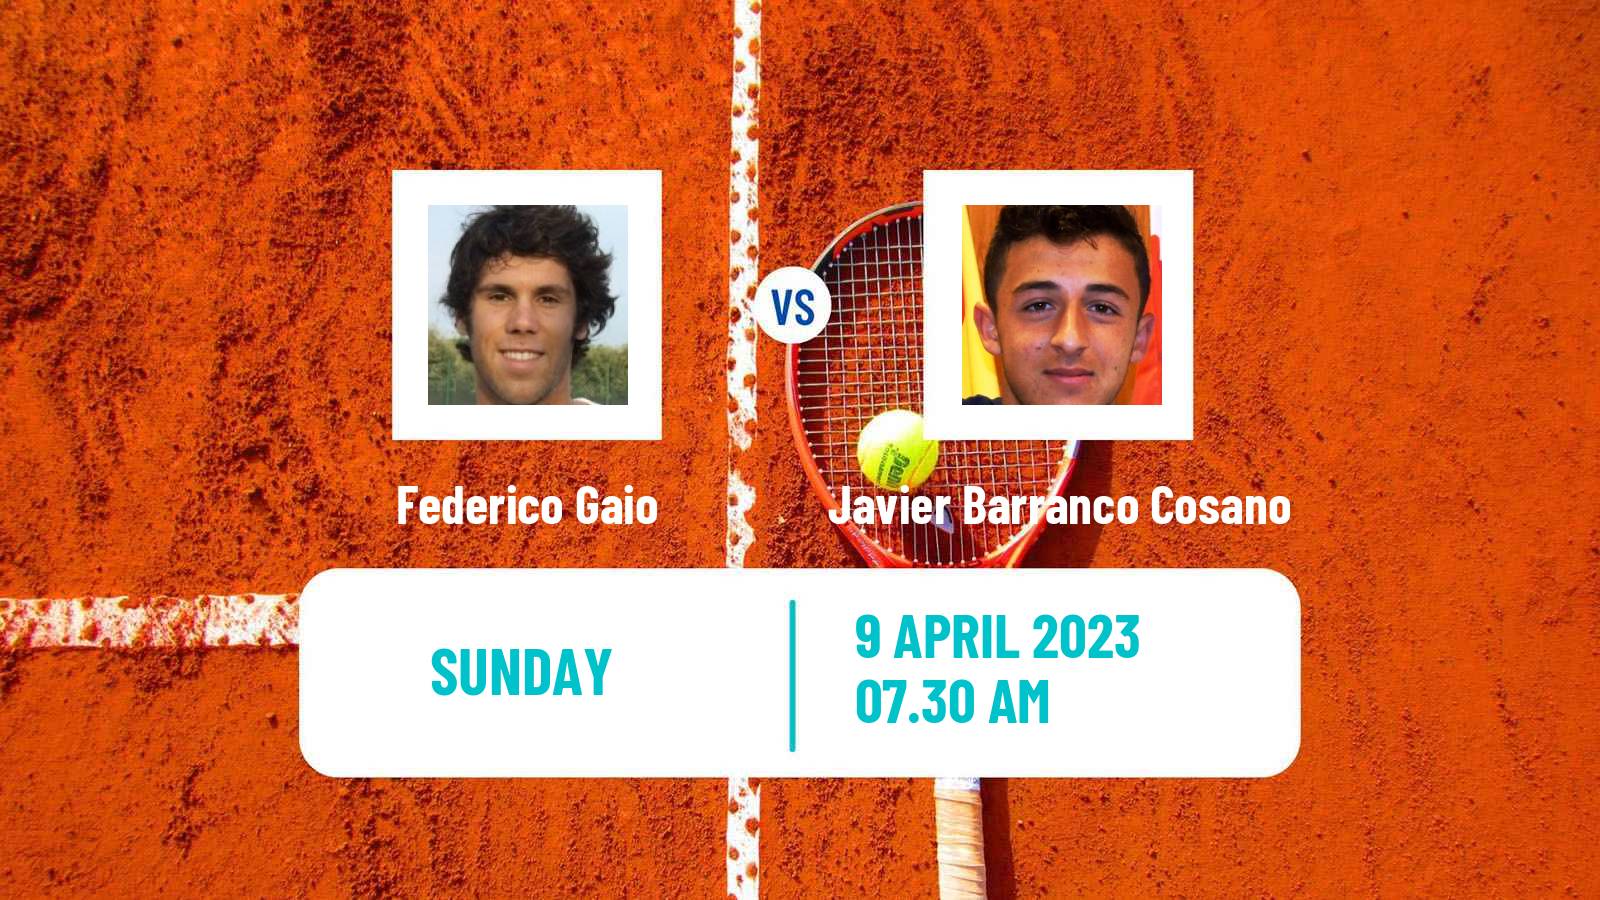 Tennis ATP Challenger Federico Gaio - Javier Barranco Cosano